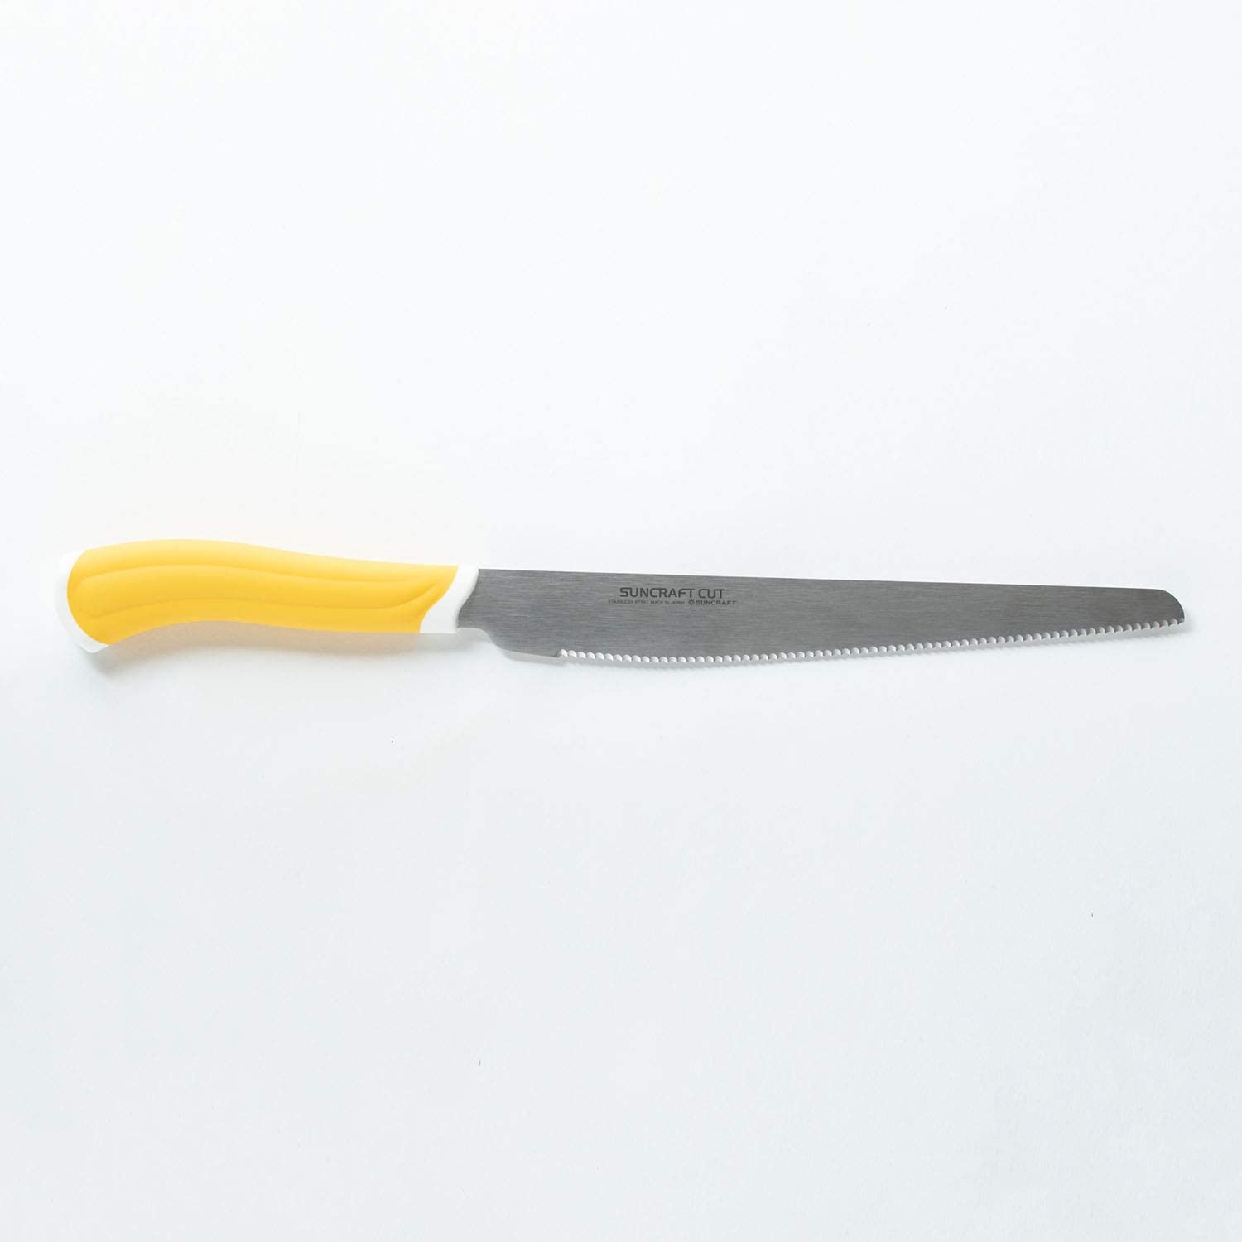 SUNCRAFT(サンクラフト) スムーズパン切りナイフ HE-2101